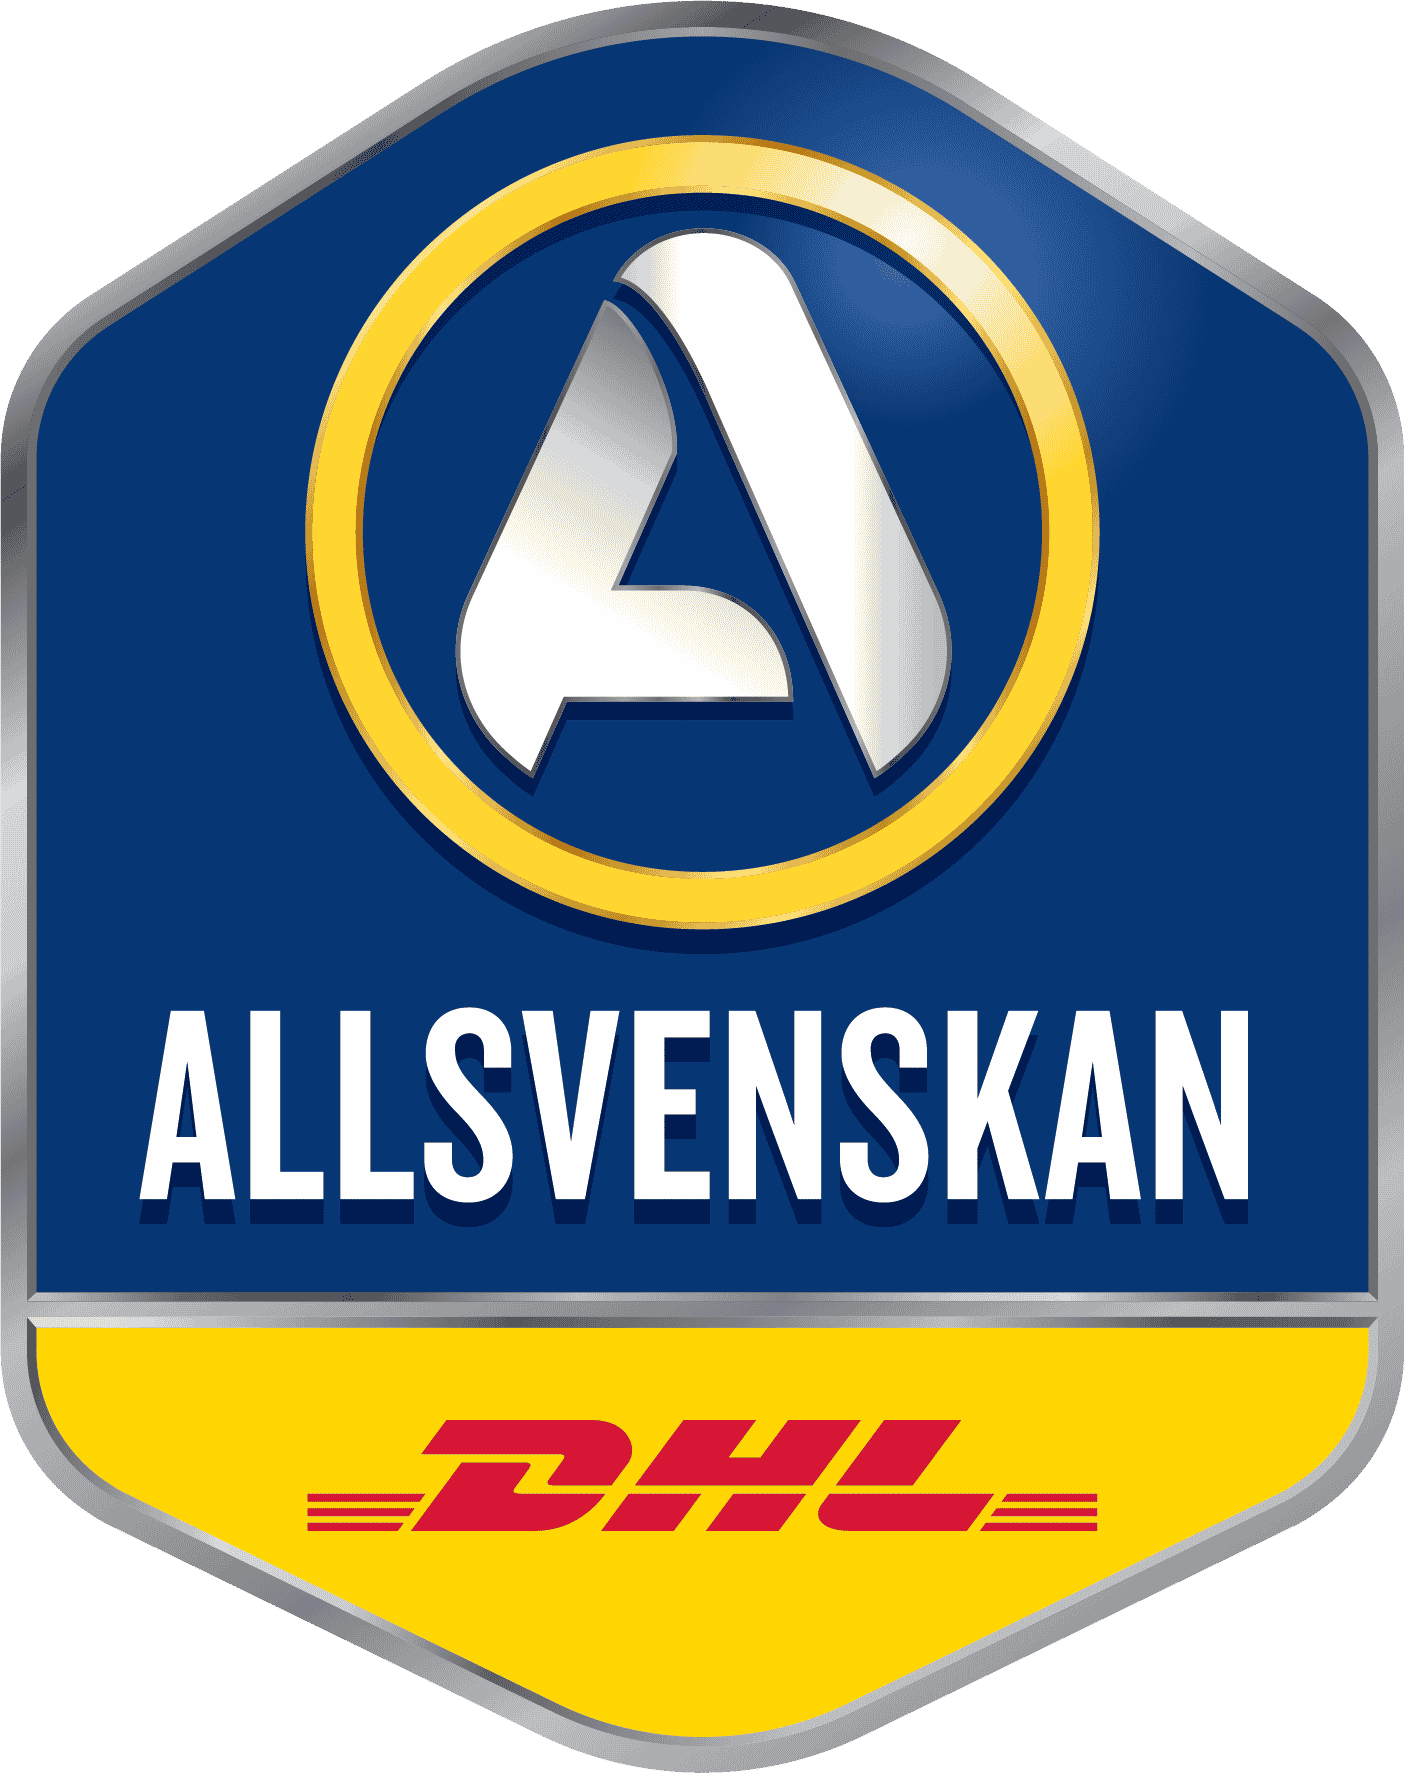 Allsvenskan stadiums 2021